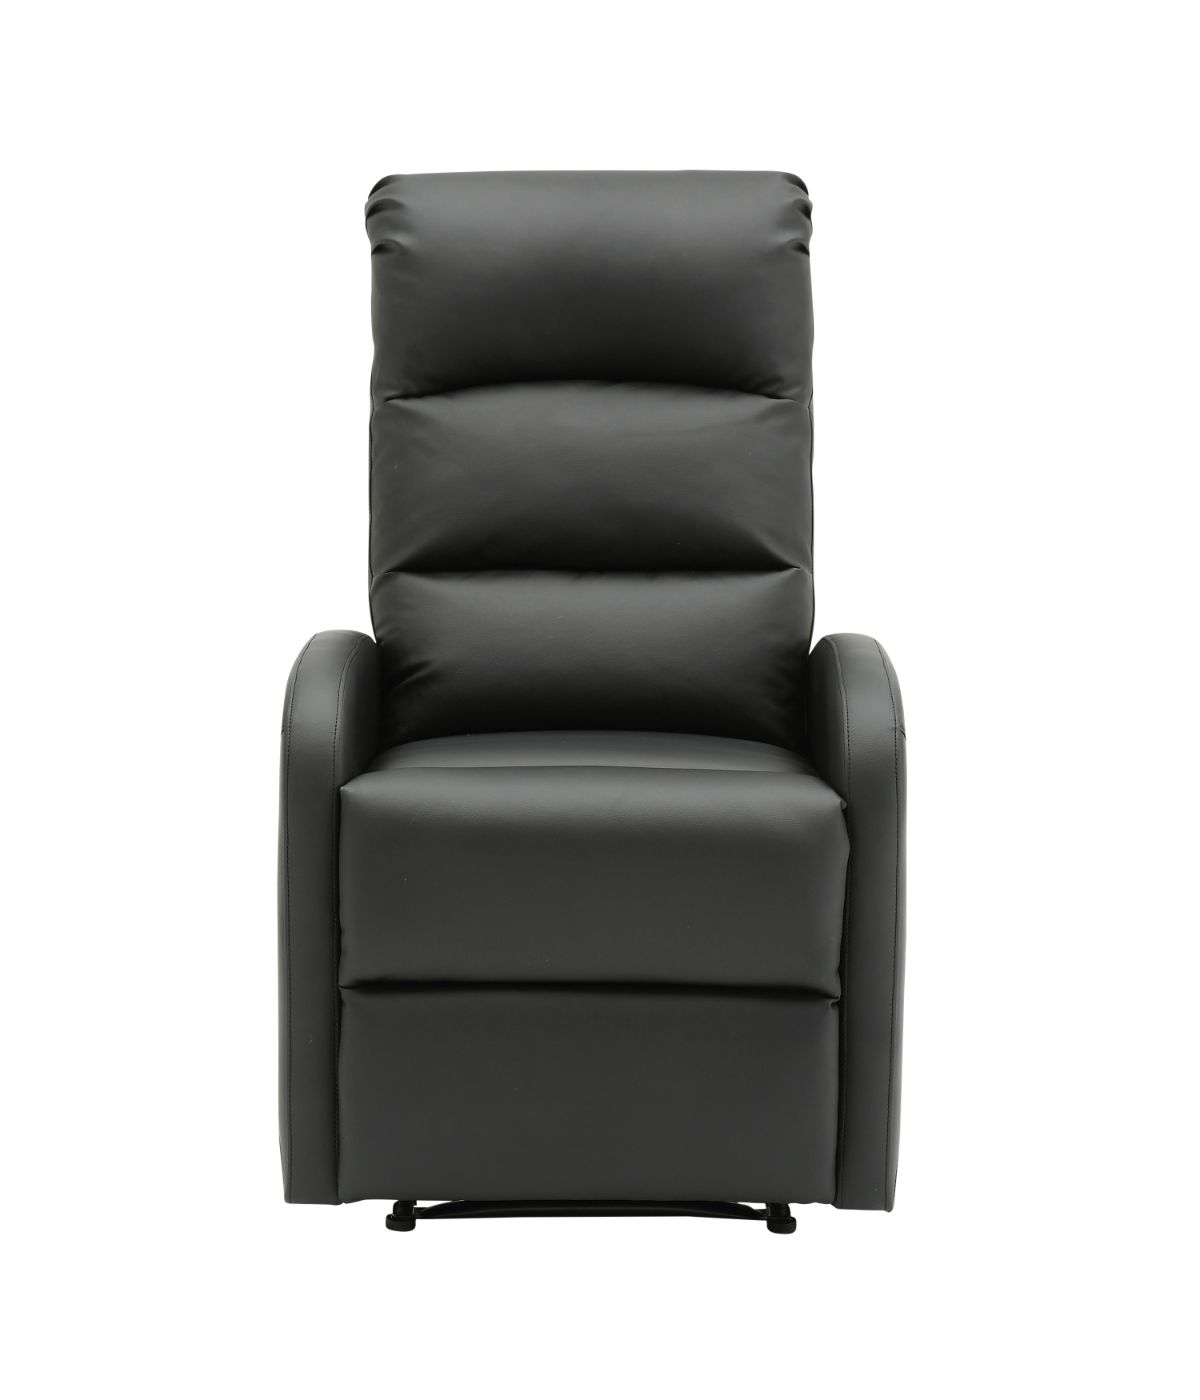 Dormi Recliner Chair Black